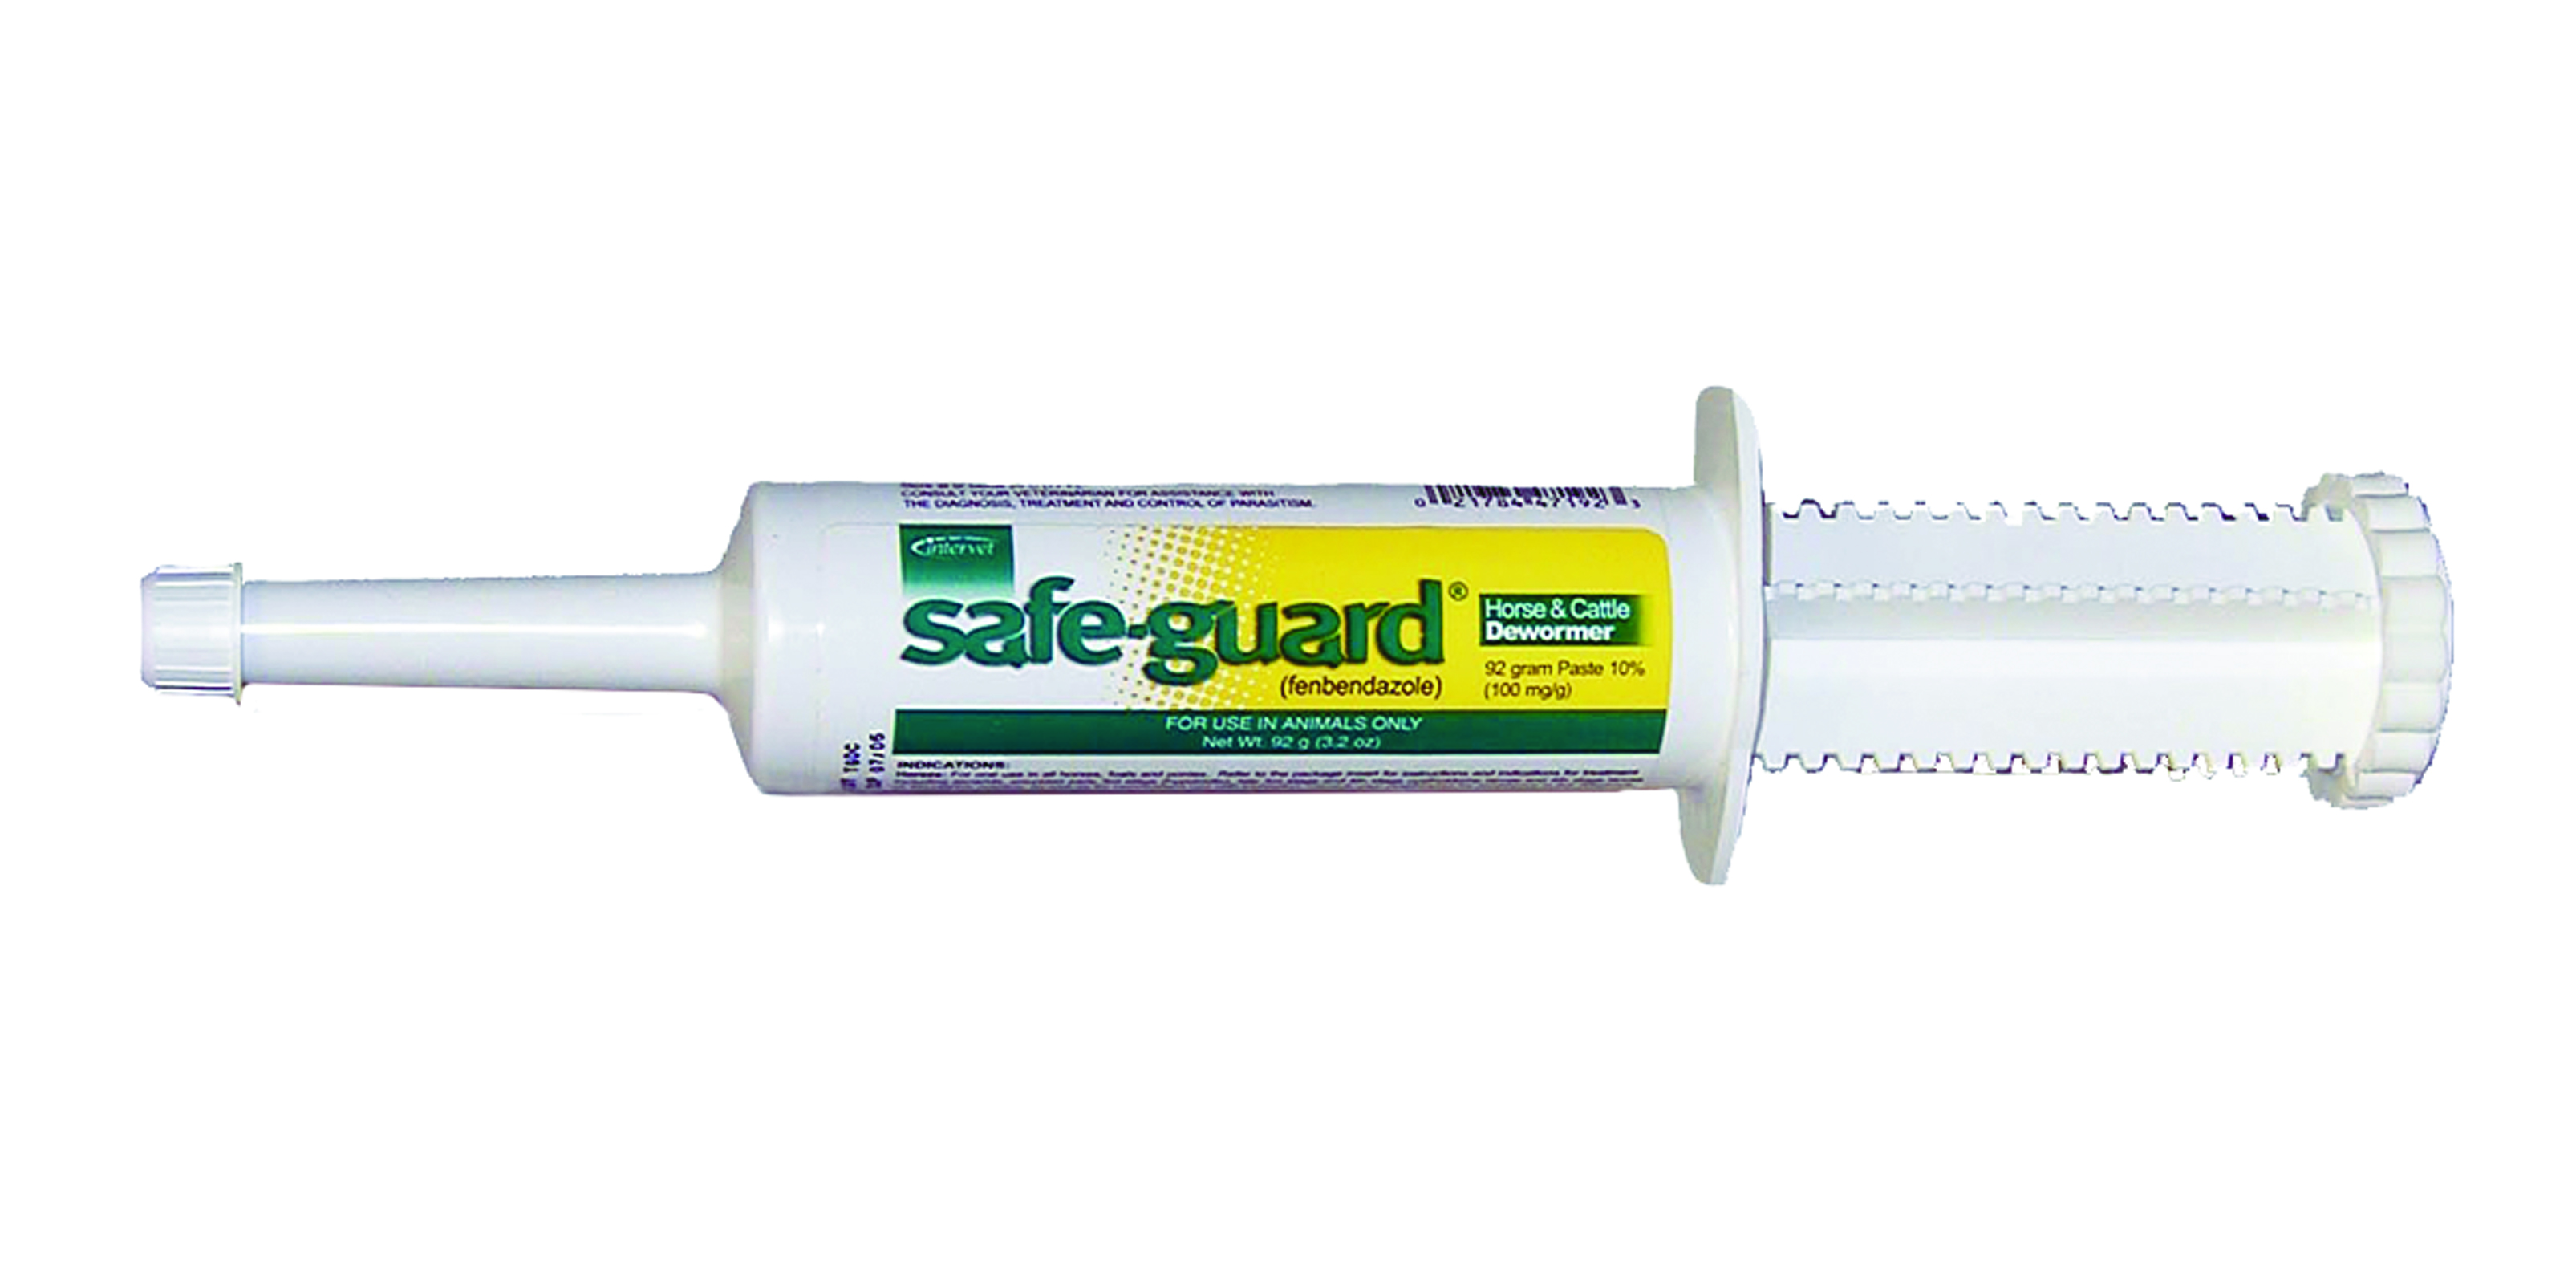 Safeguard Cattle Syringe 92 g